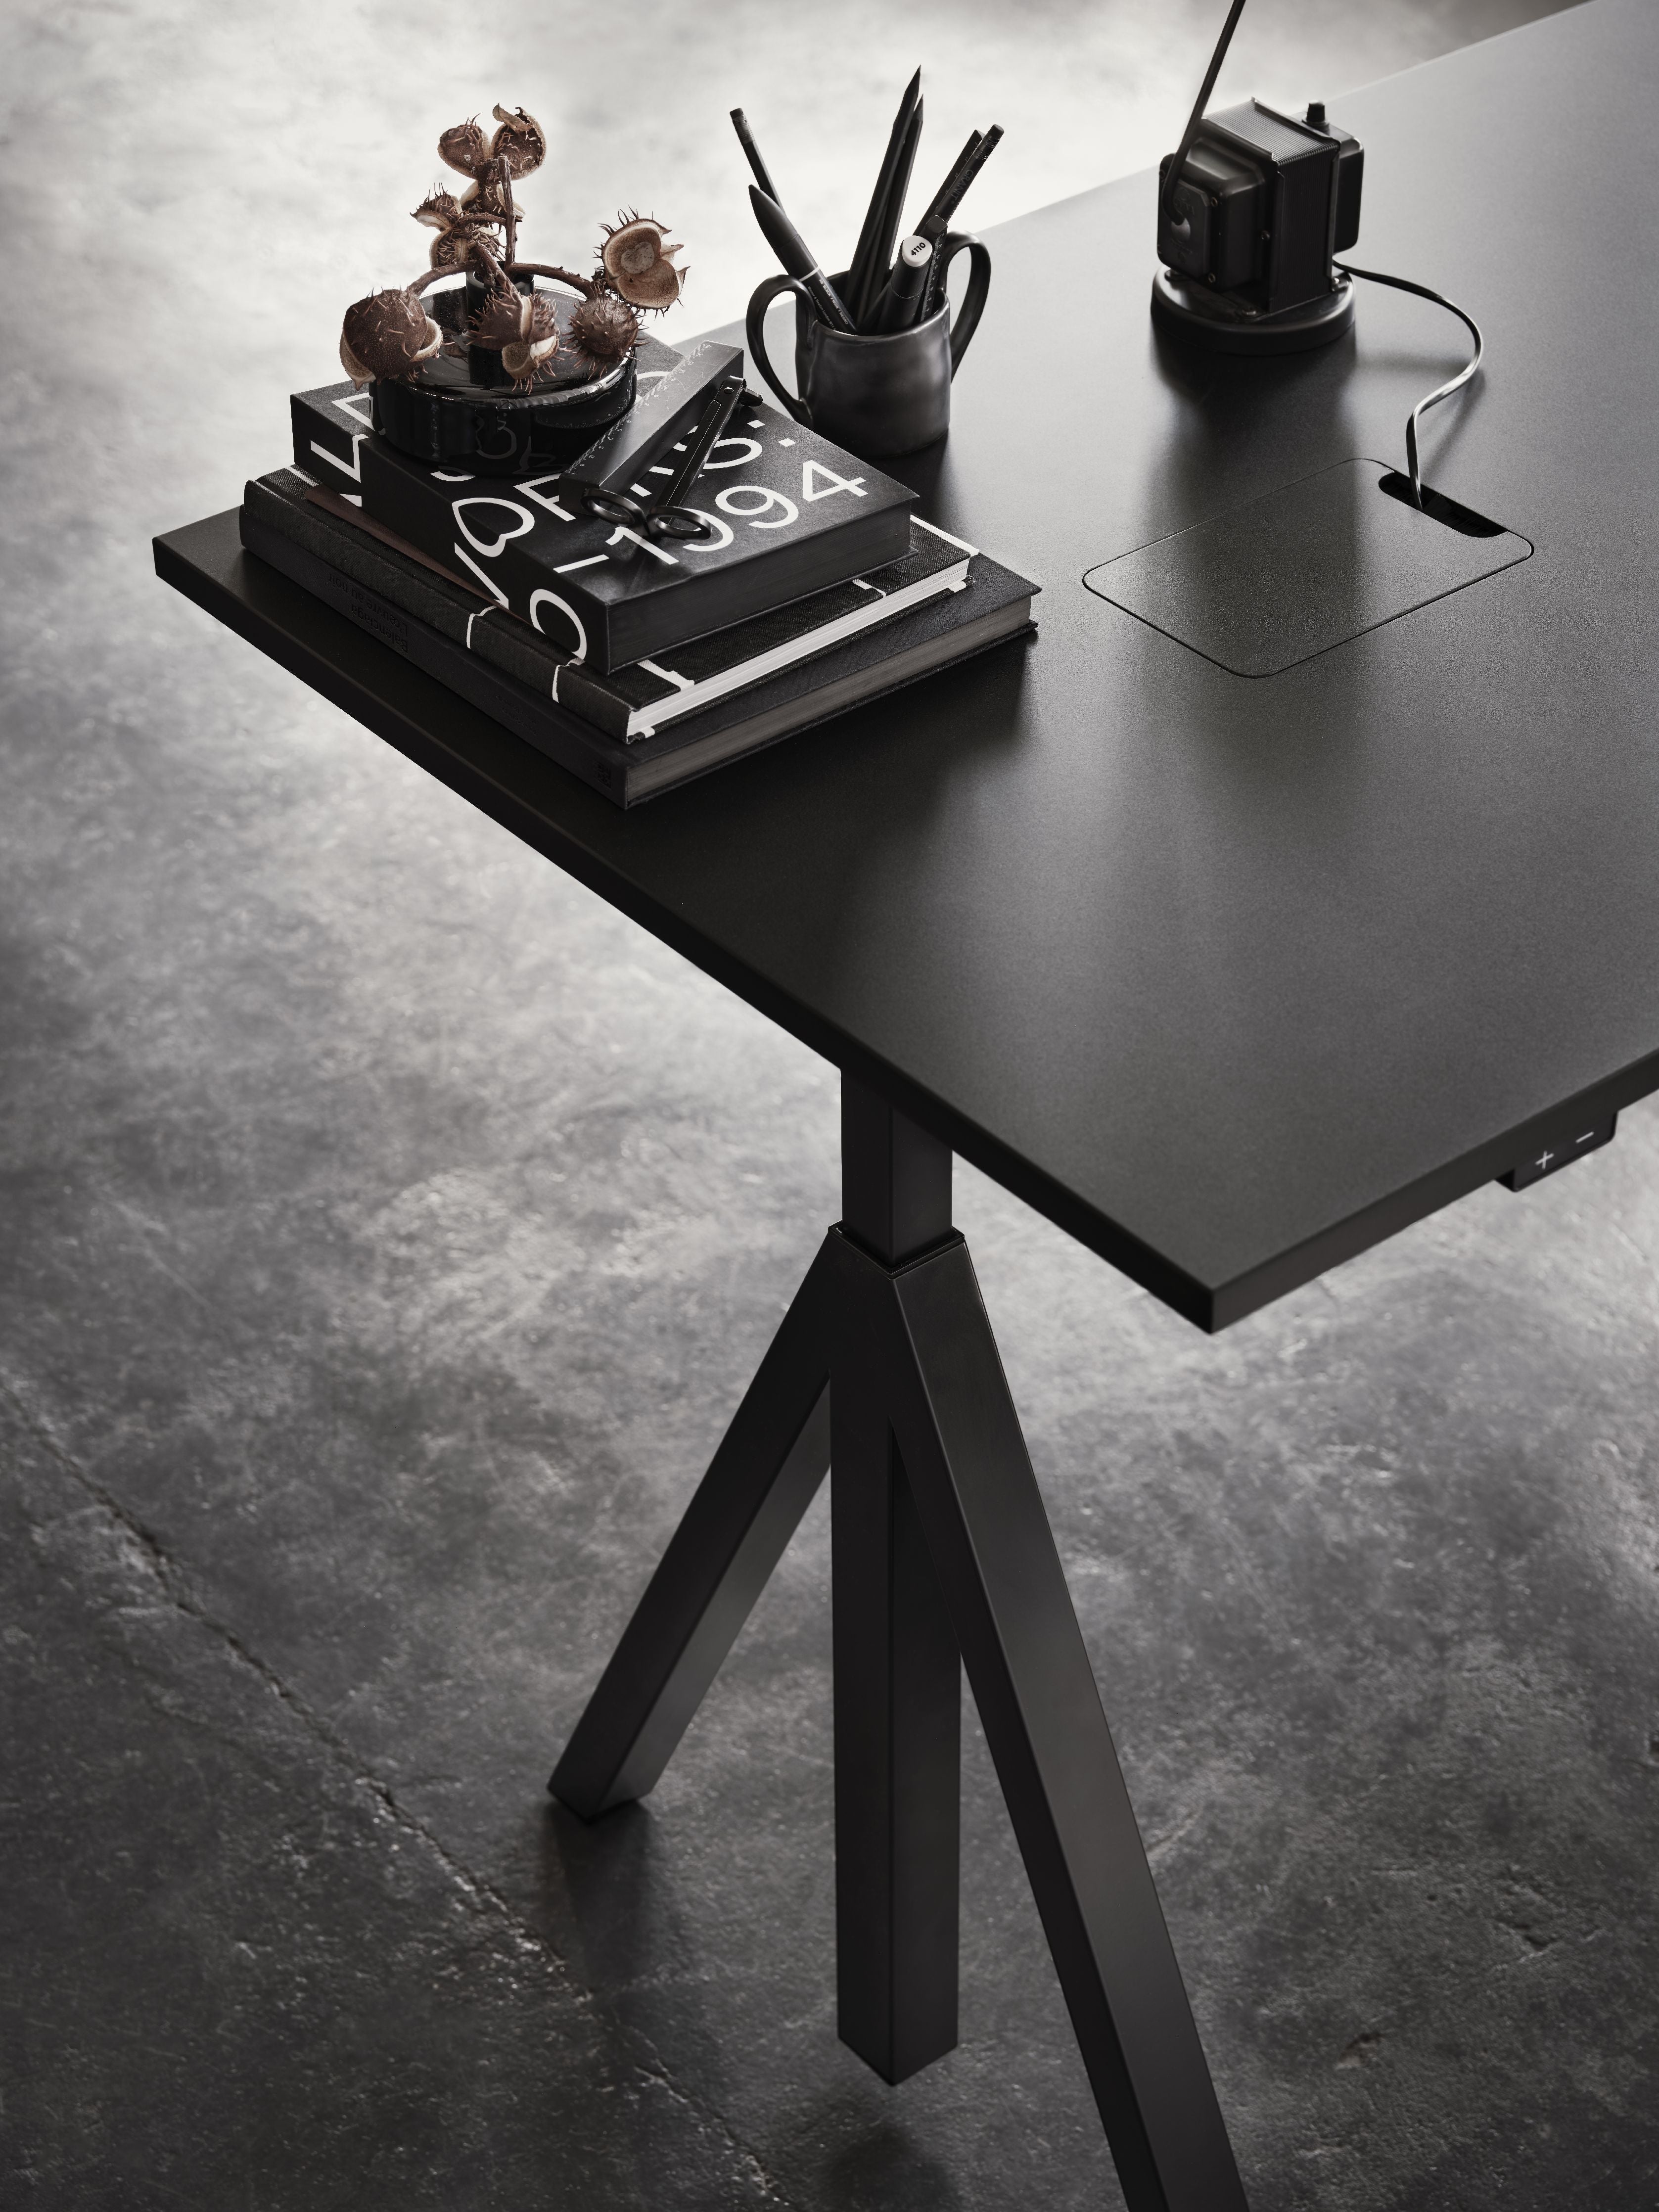 String Furniture Fungerar höjd justerbar skrivbord 78x160 cm, svart/svart